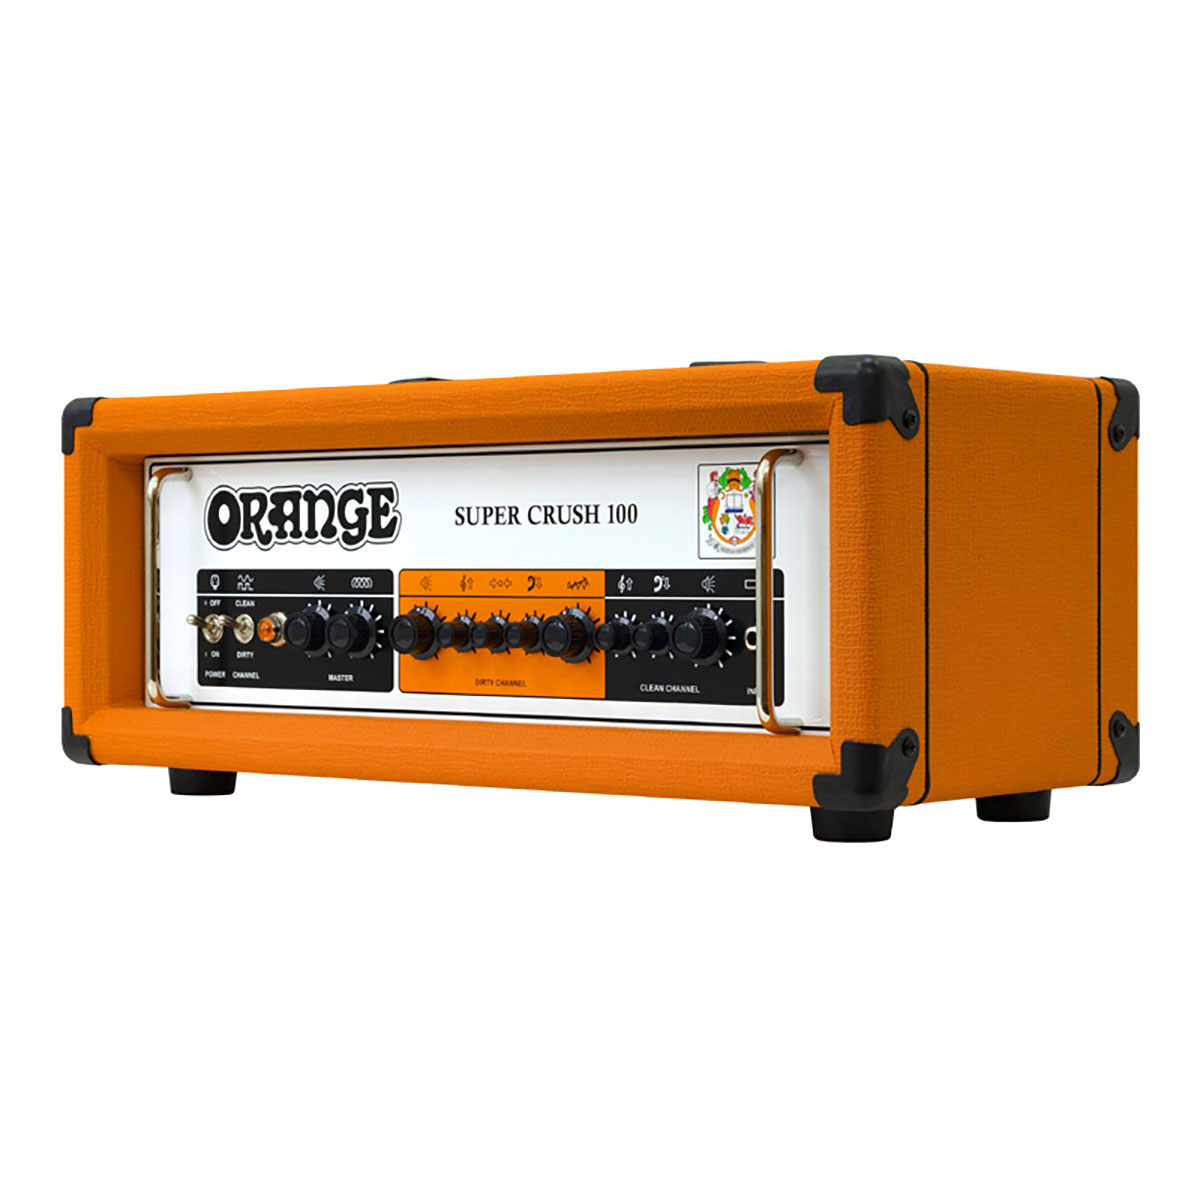 Orangeよりギター・アンプ“SUPER CRUSH 100”のヘッドとコンボが登場 